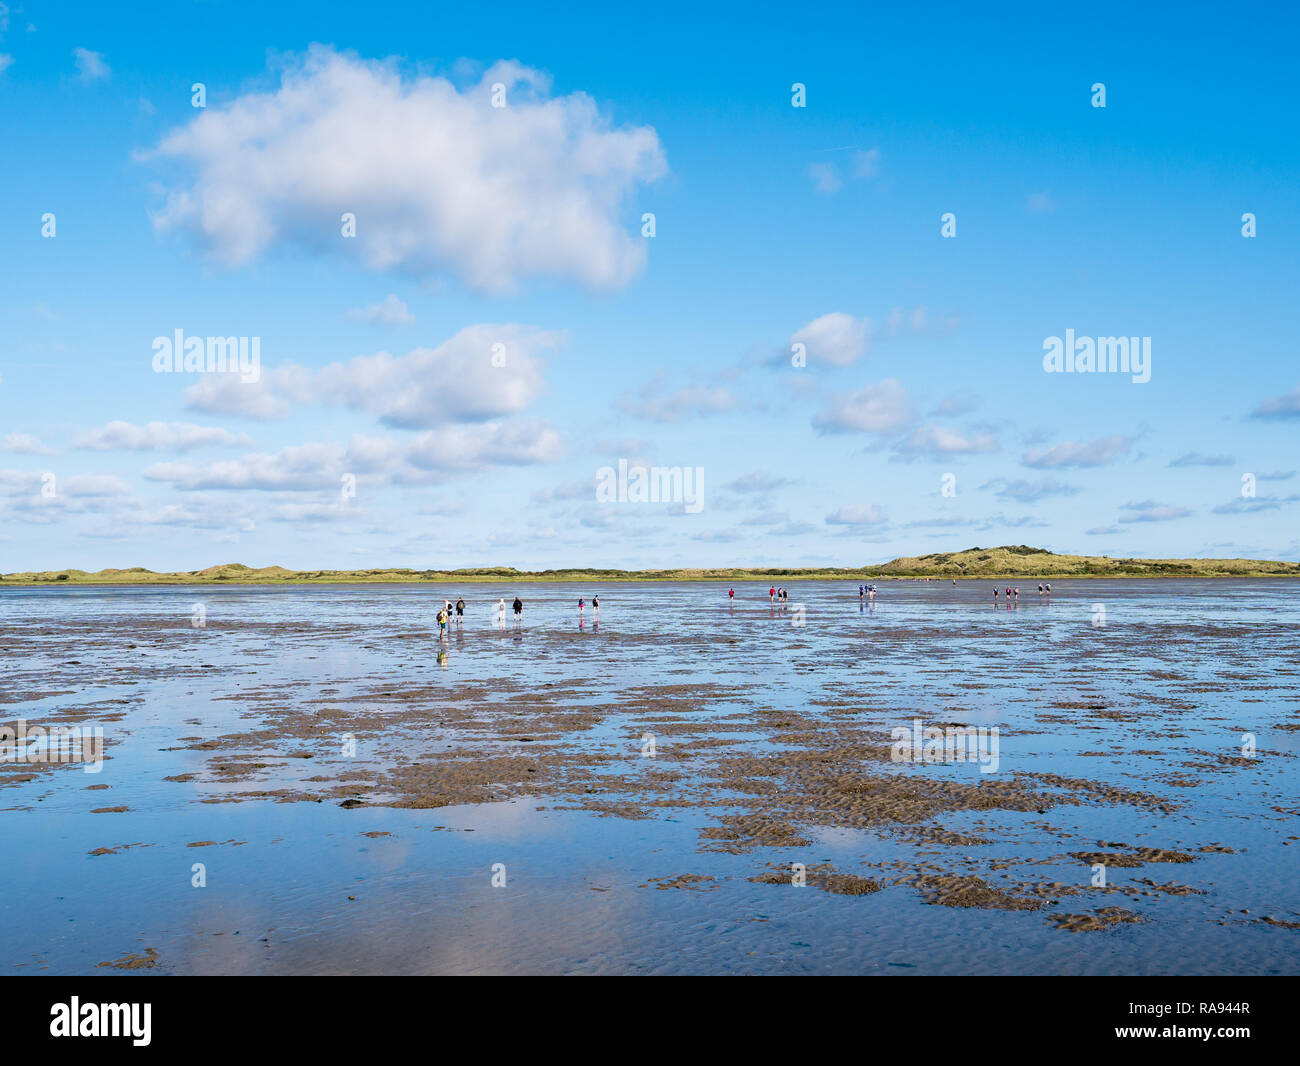 Gruppe von Menschen Schlamm flach Wandern auf Wattenmeer bei Ebbe aus Friesland die Westfriesische Insel Ameland, Niederlande Stockfoto